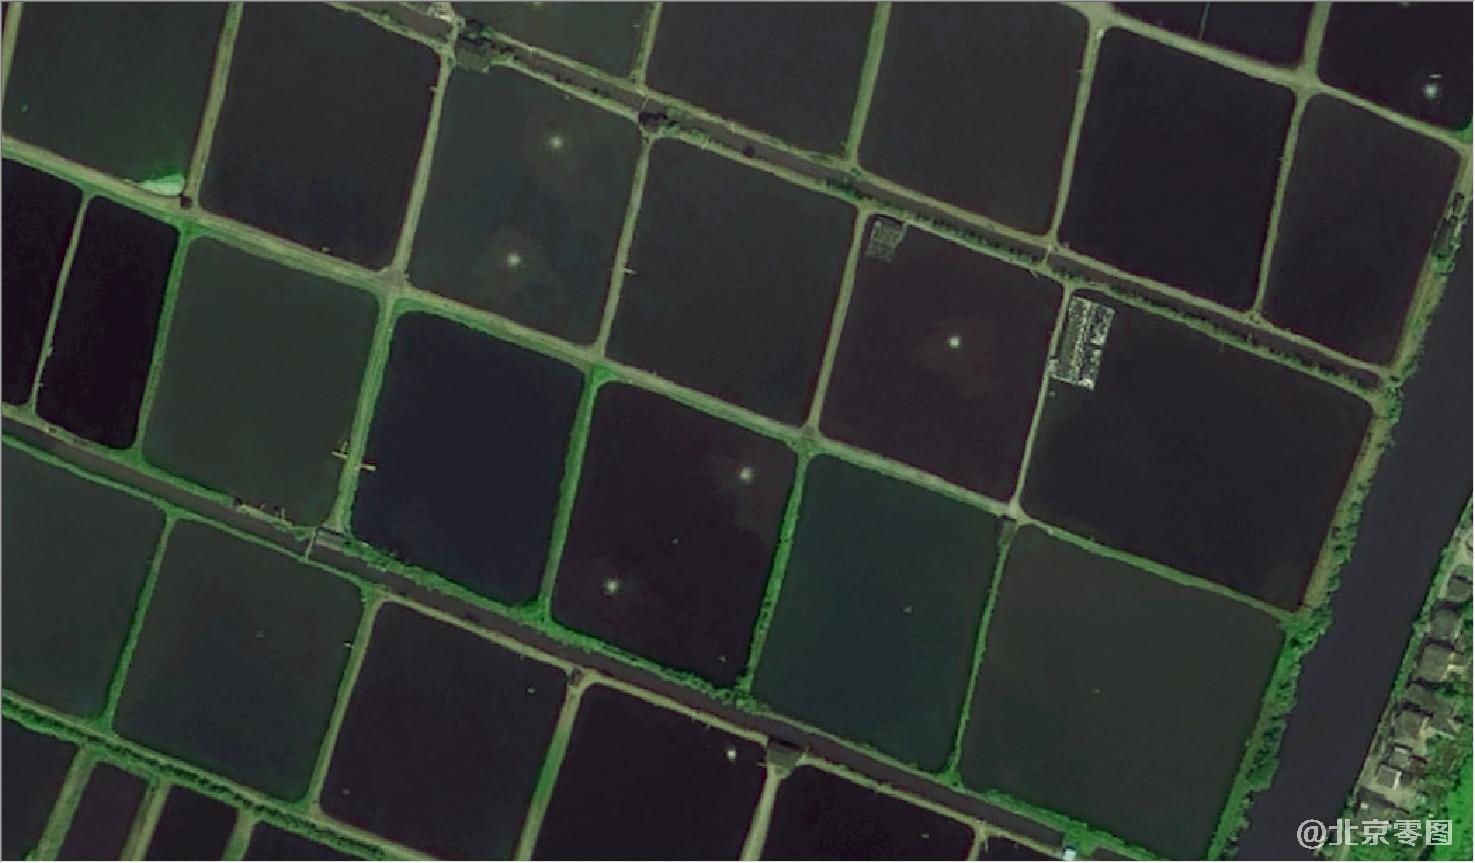 Pleiades卫星拍摄的0.5米卫星图-用于灌溉设计图